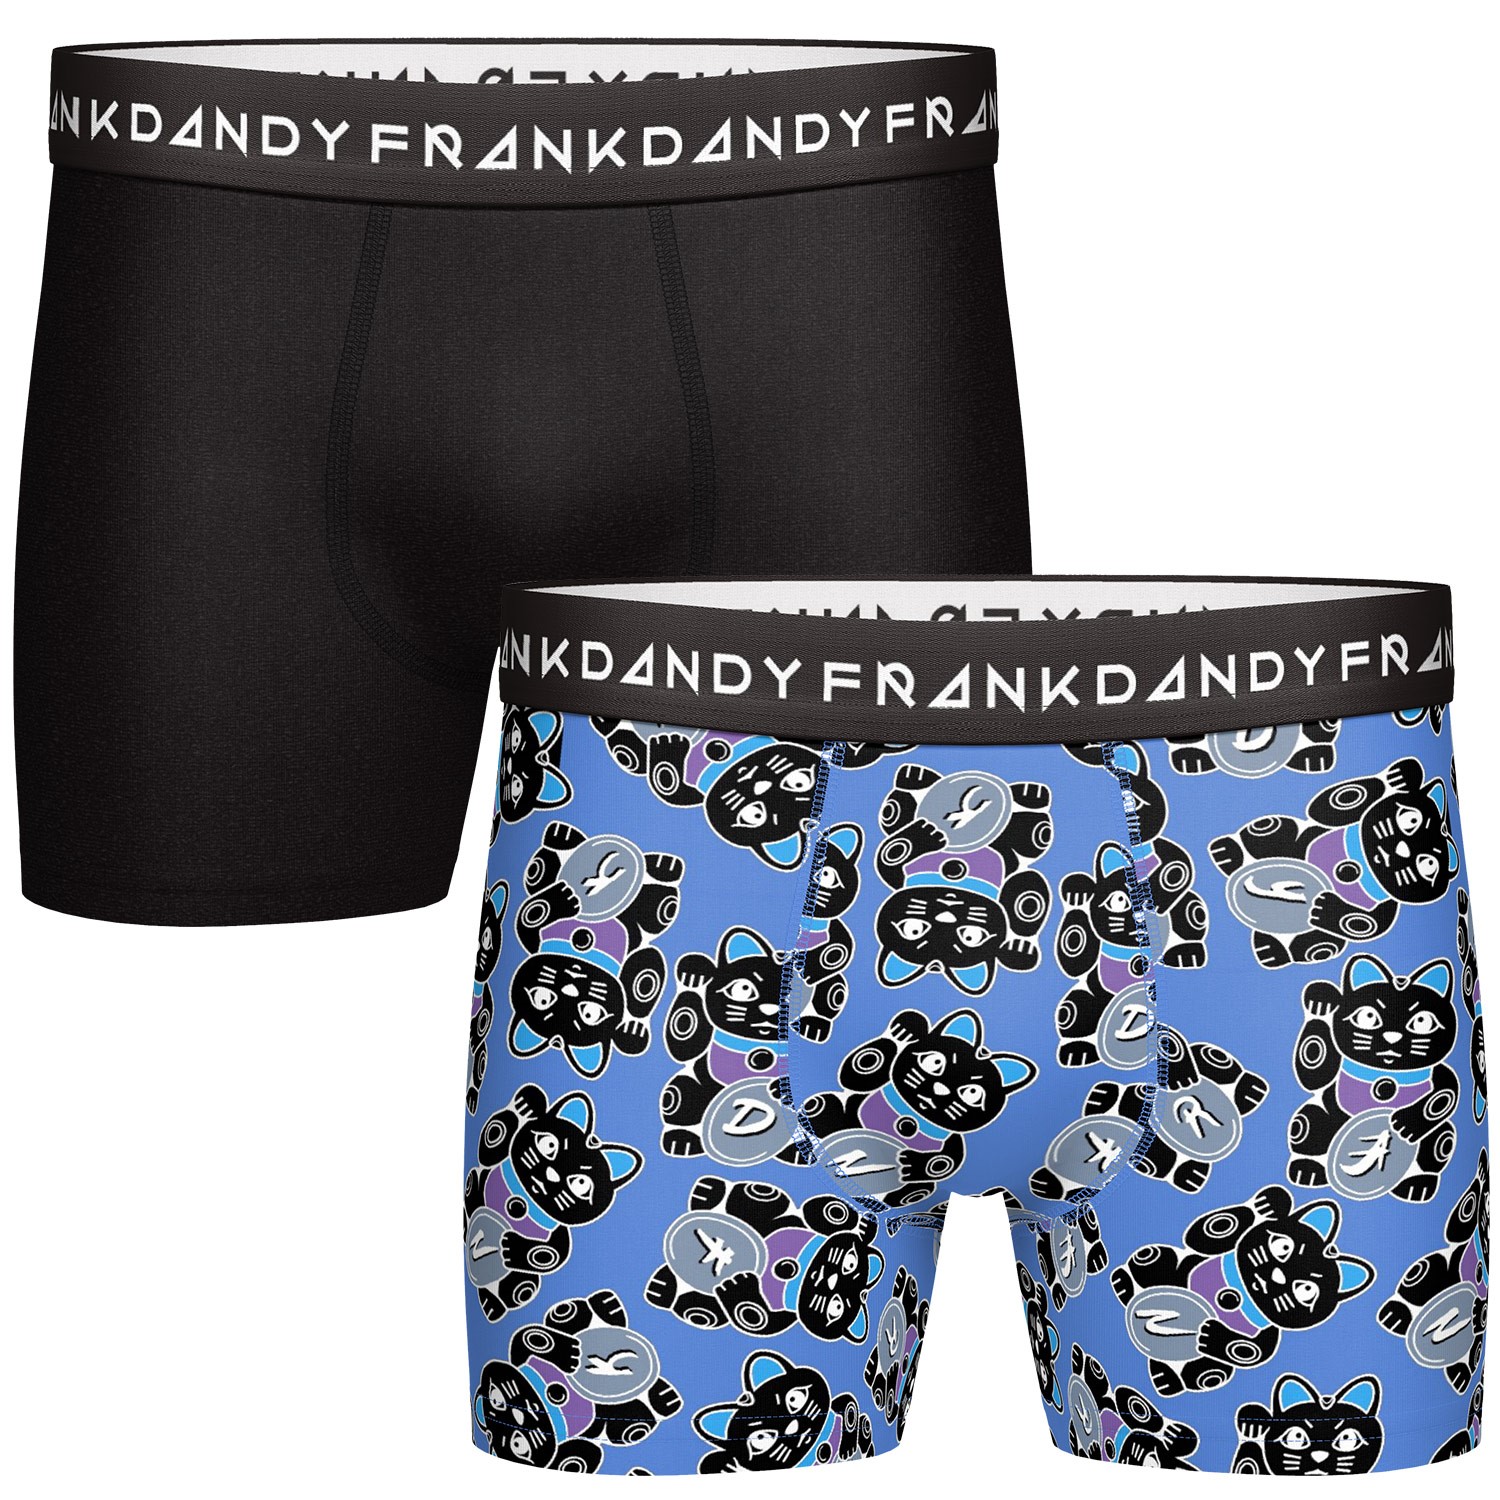 Frank Dandy Souvenir Boxers